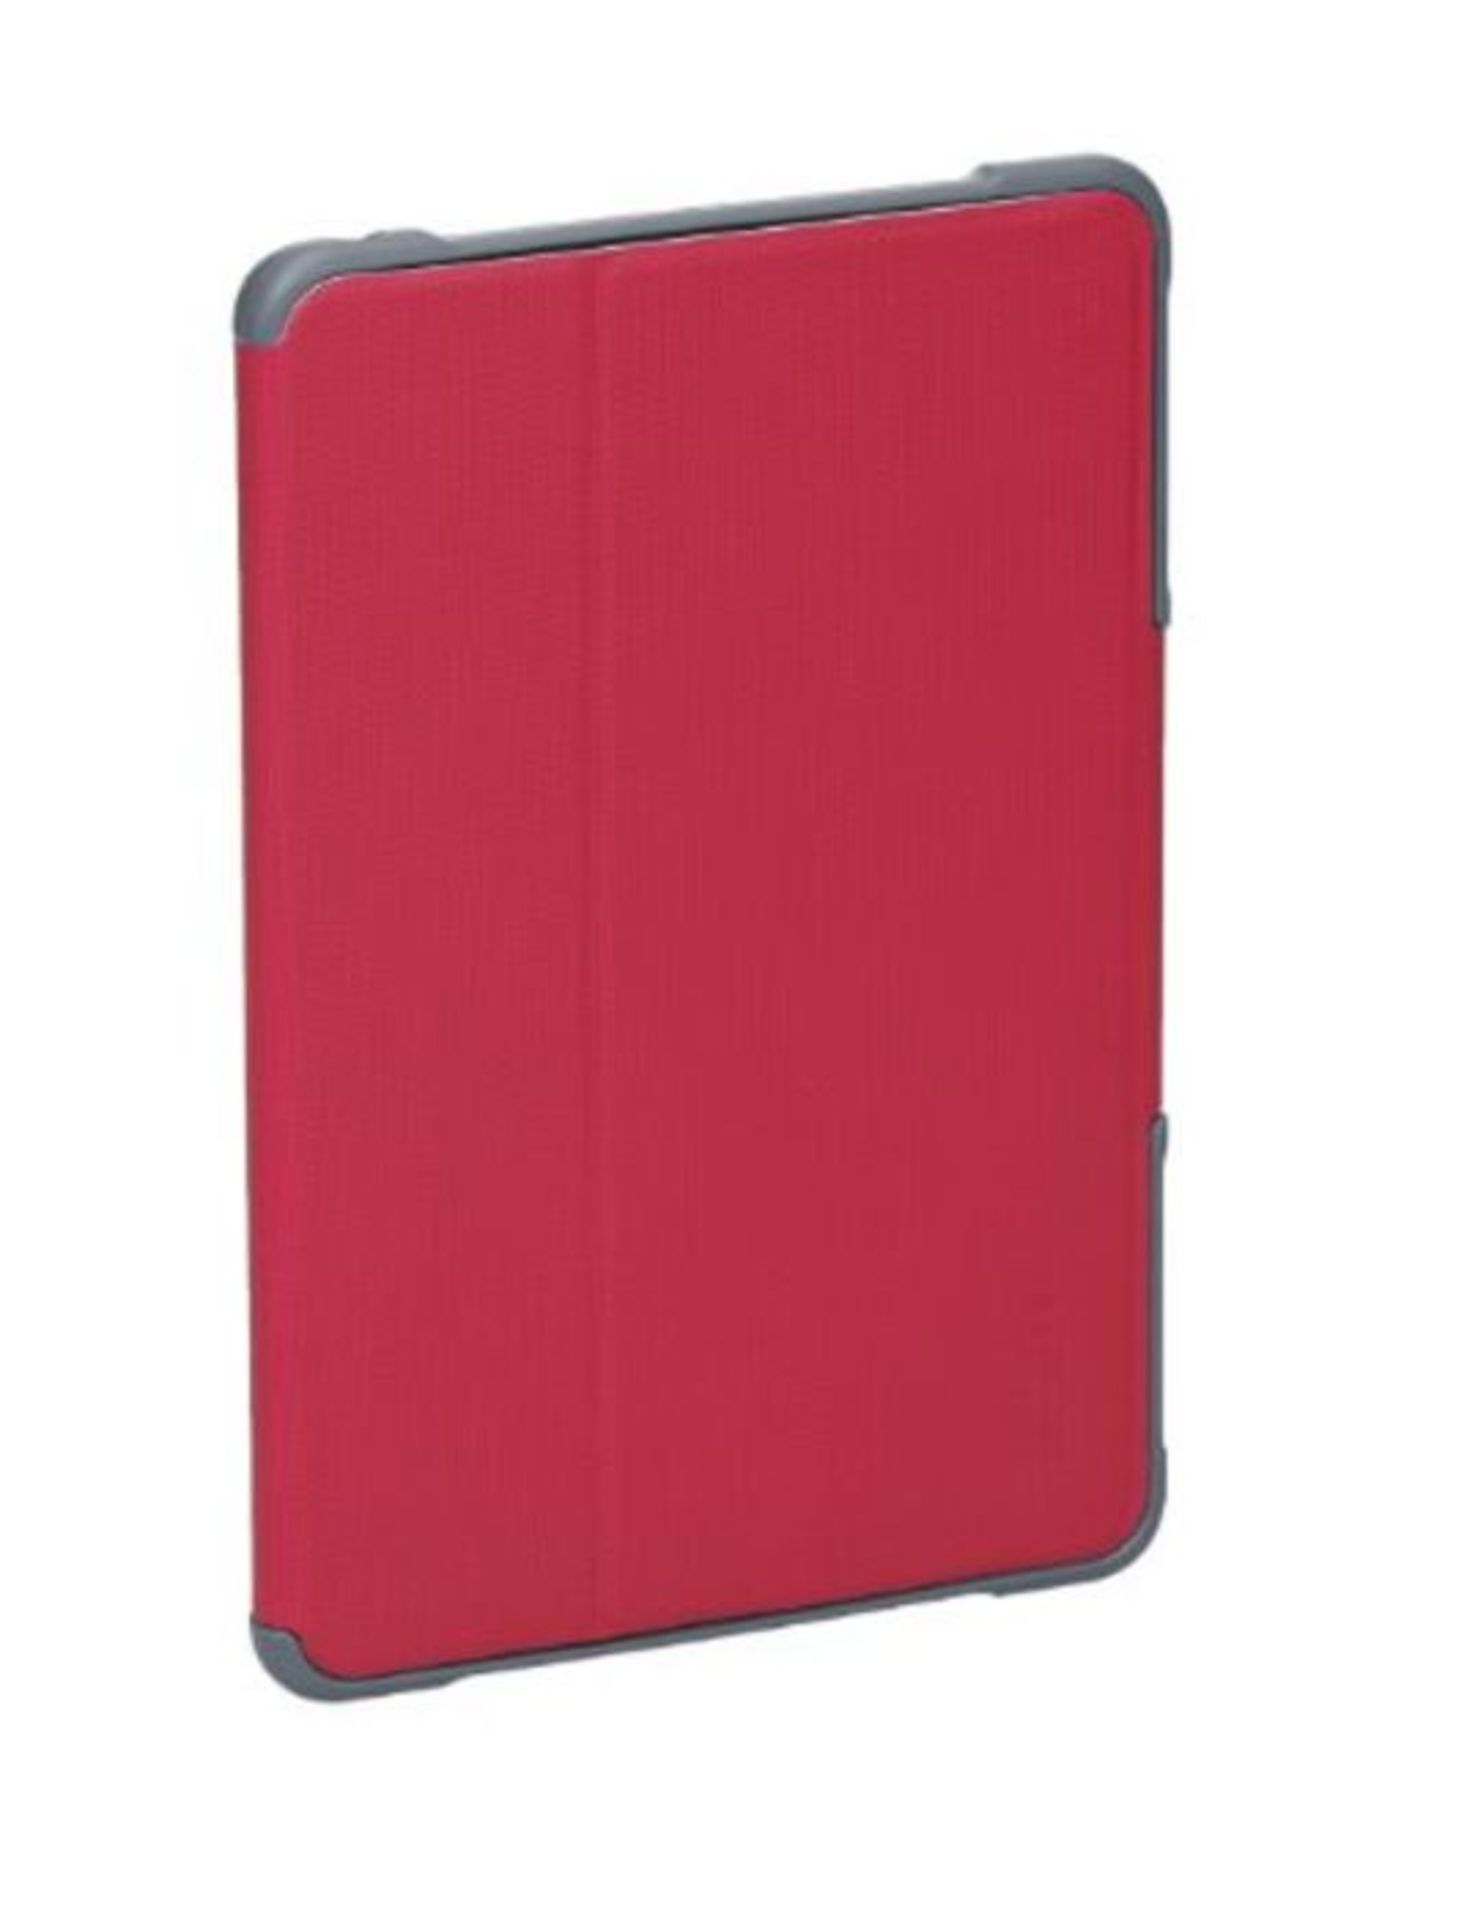 STM dux Case for iPad Mini/Mini 2/Mini 3 - Red